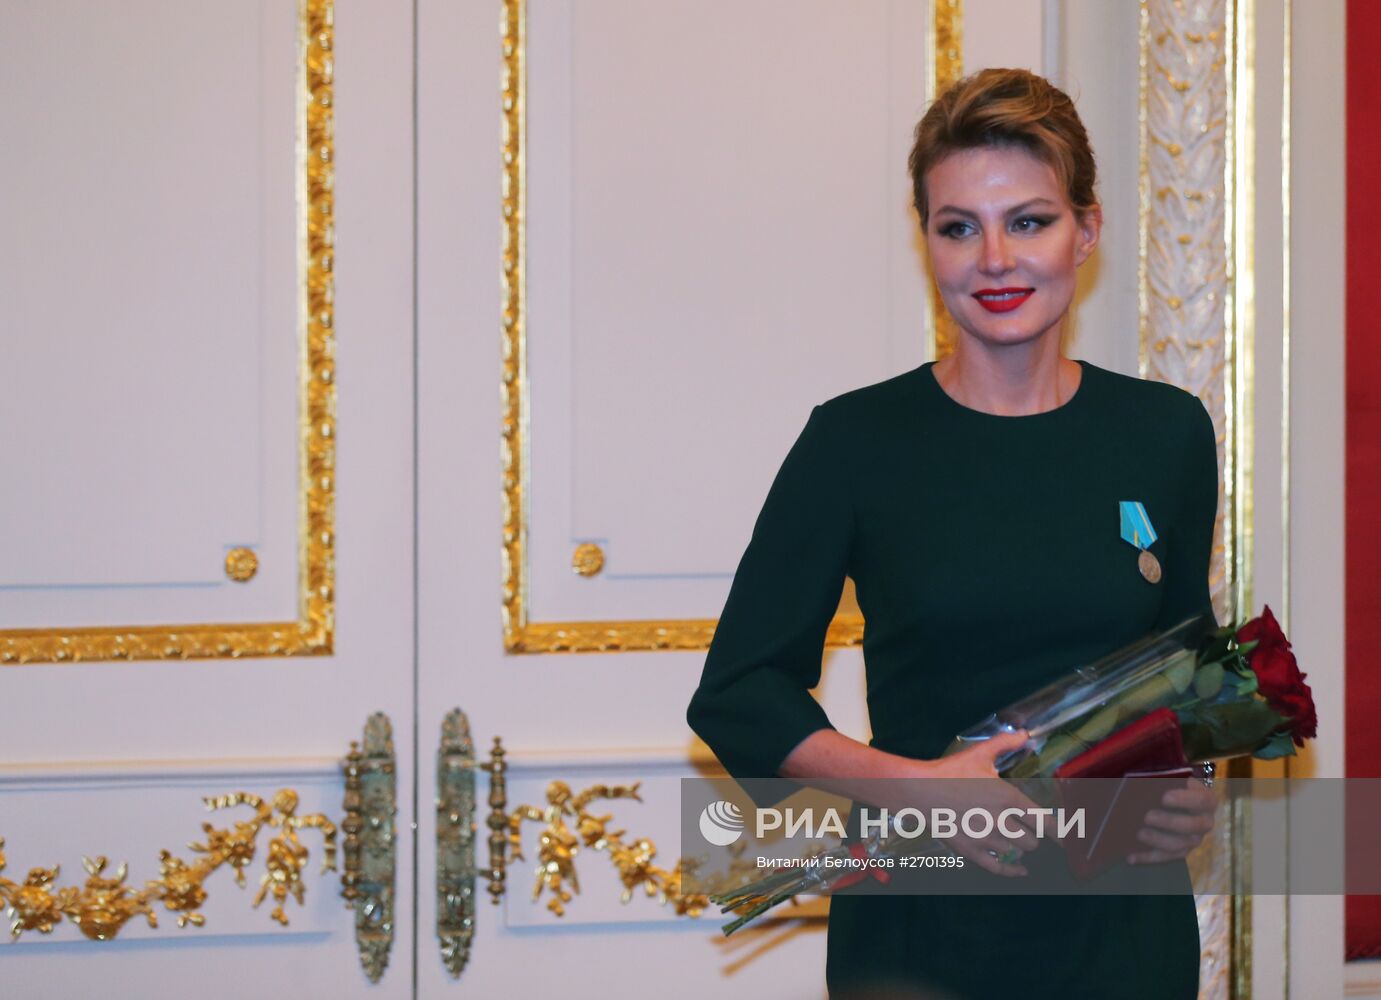 Награждение деятелей культуры и искусства государственными наградами Российской Федерации